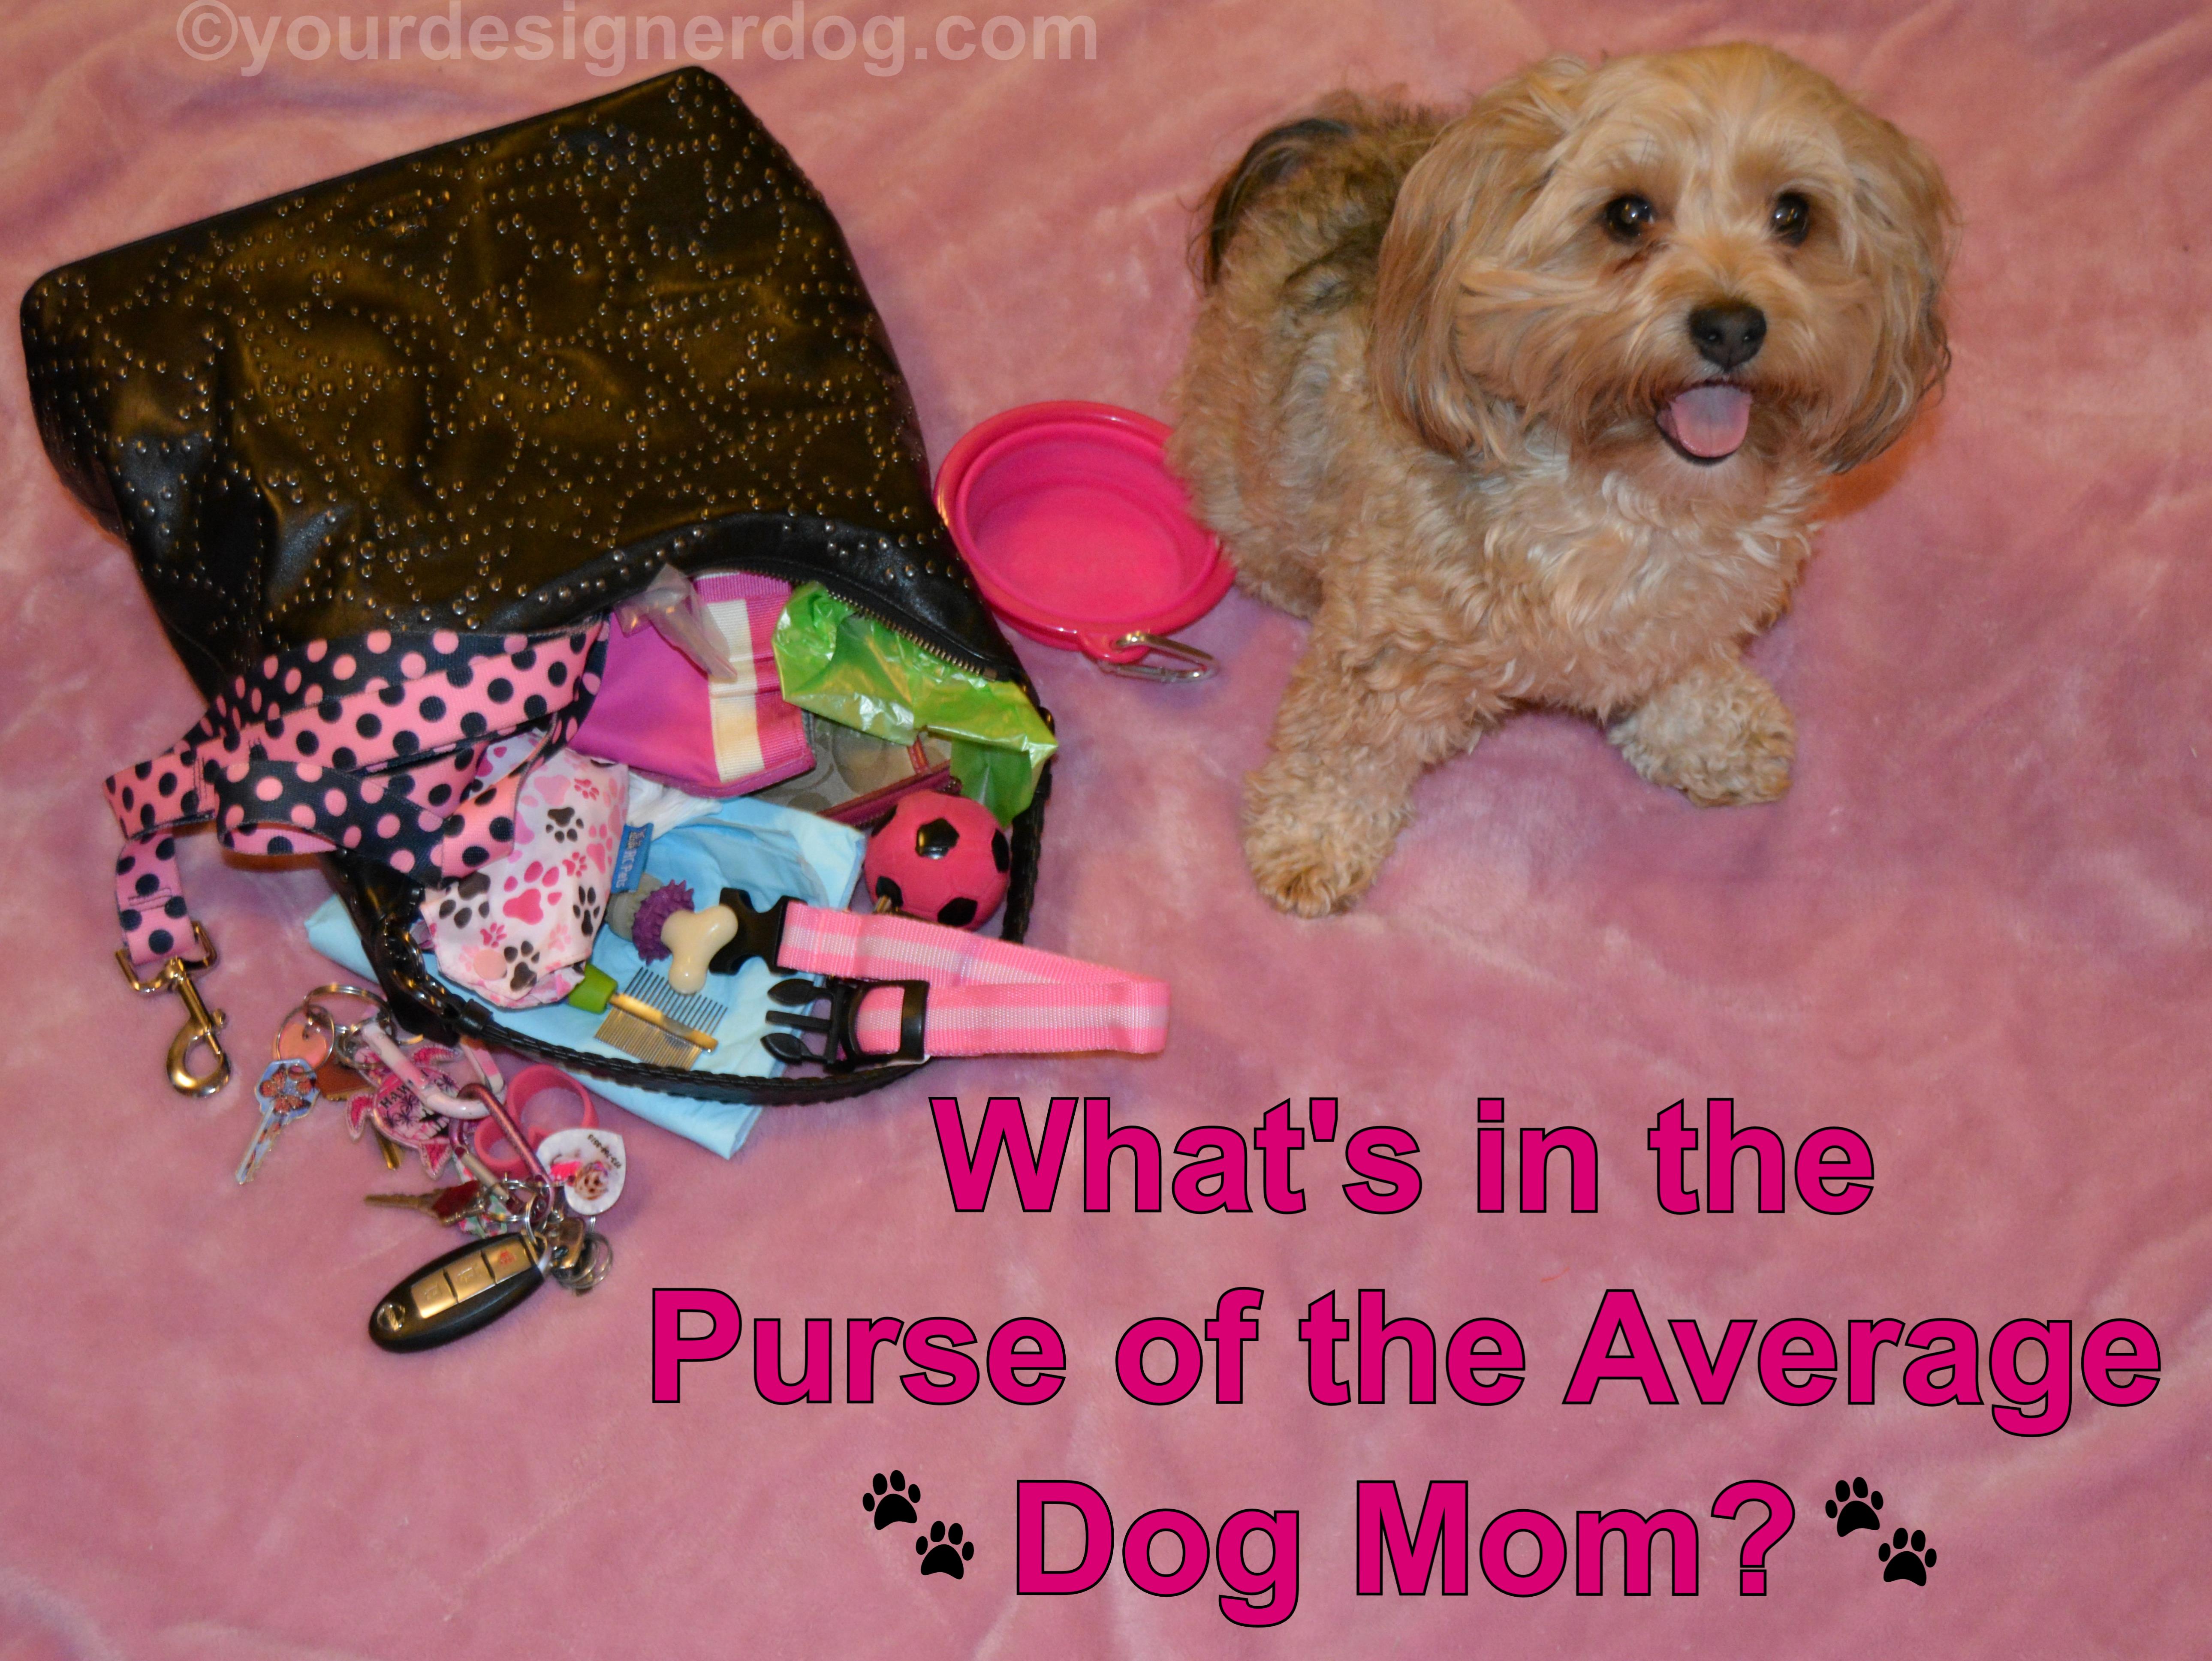 Inside the Purse of a Dog Mom